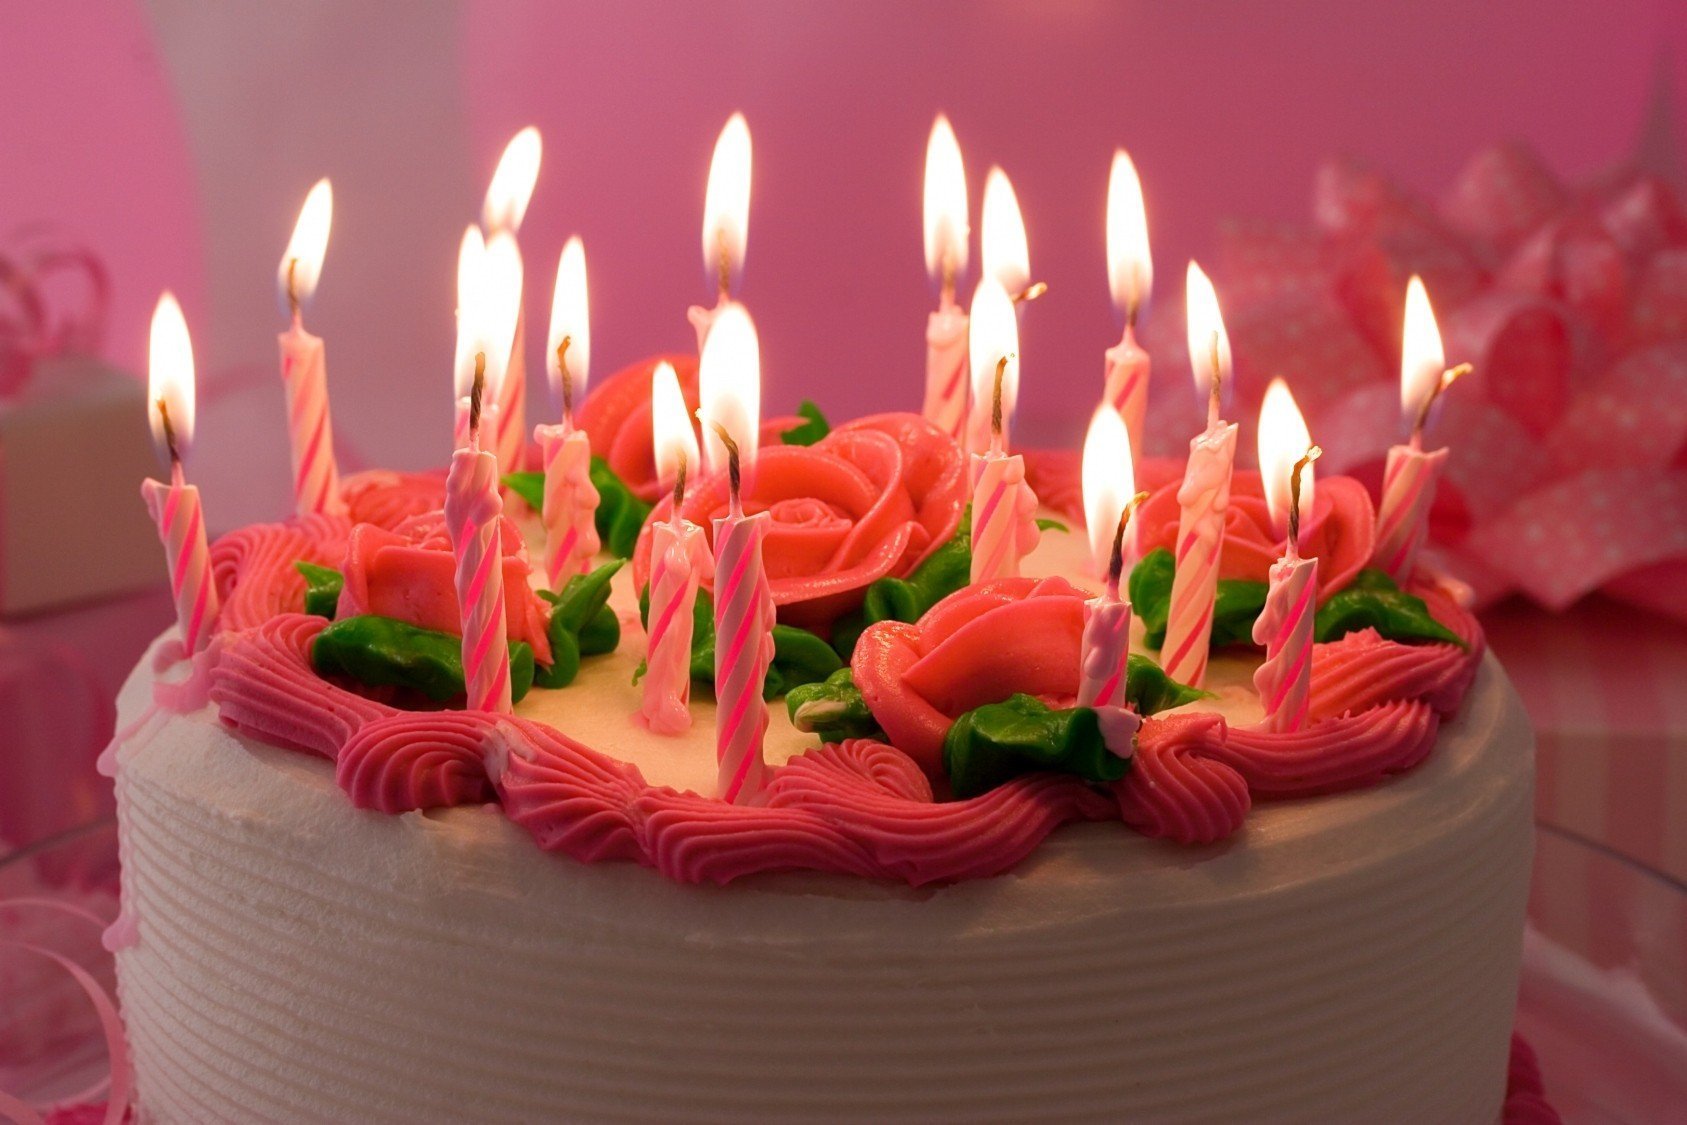 Изображения по запросу Открытка с днем рождения торт